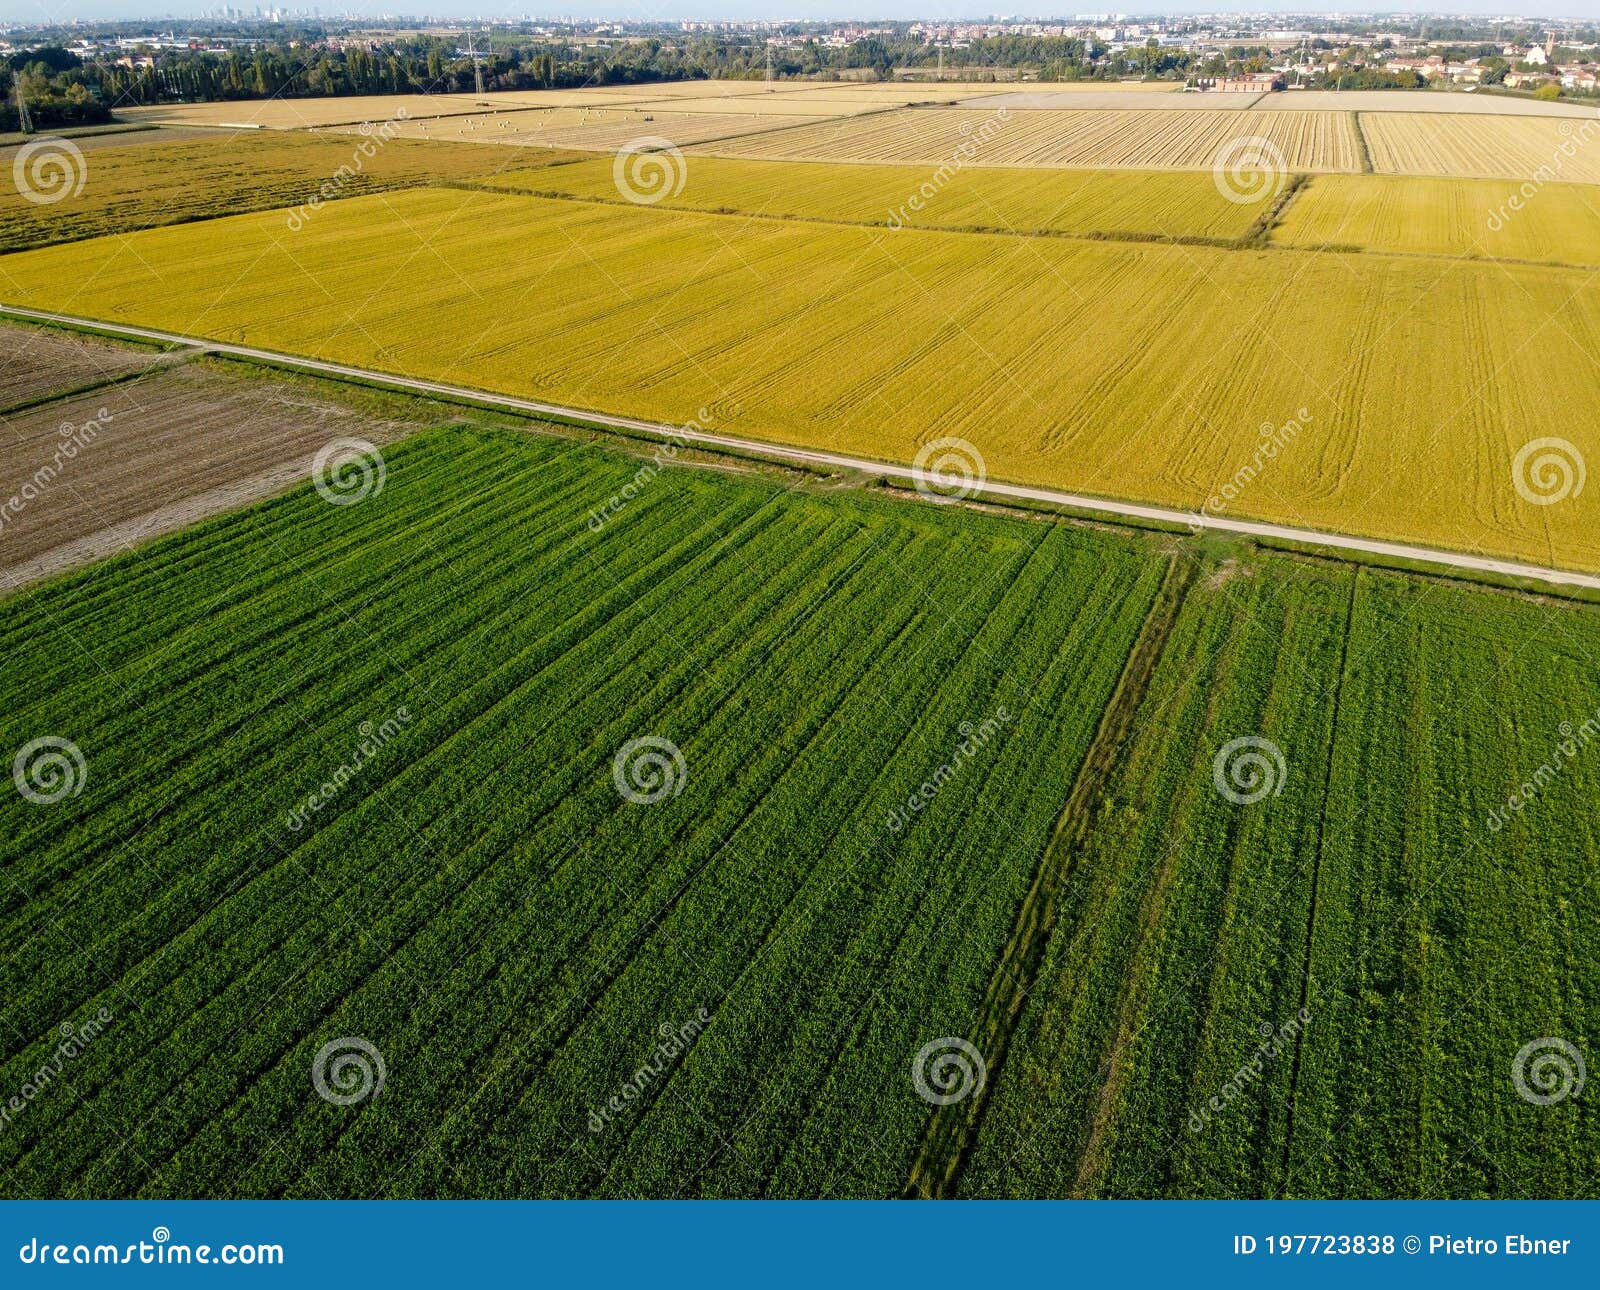 pieve emanuele fields from drone